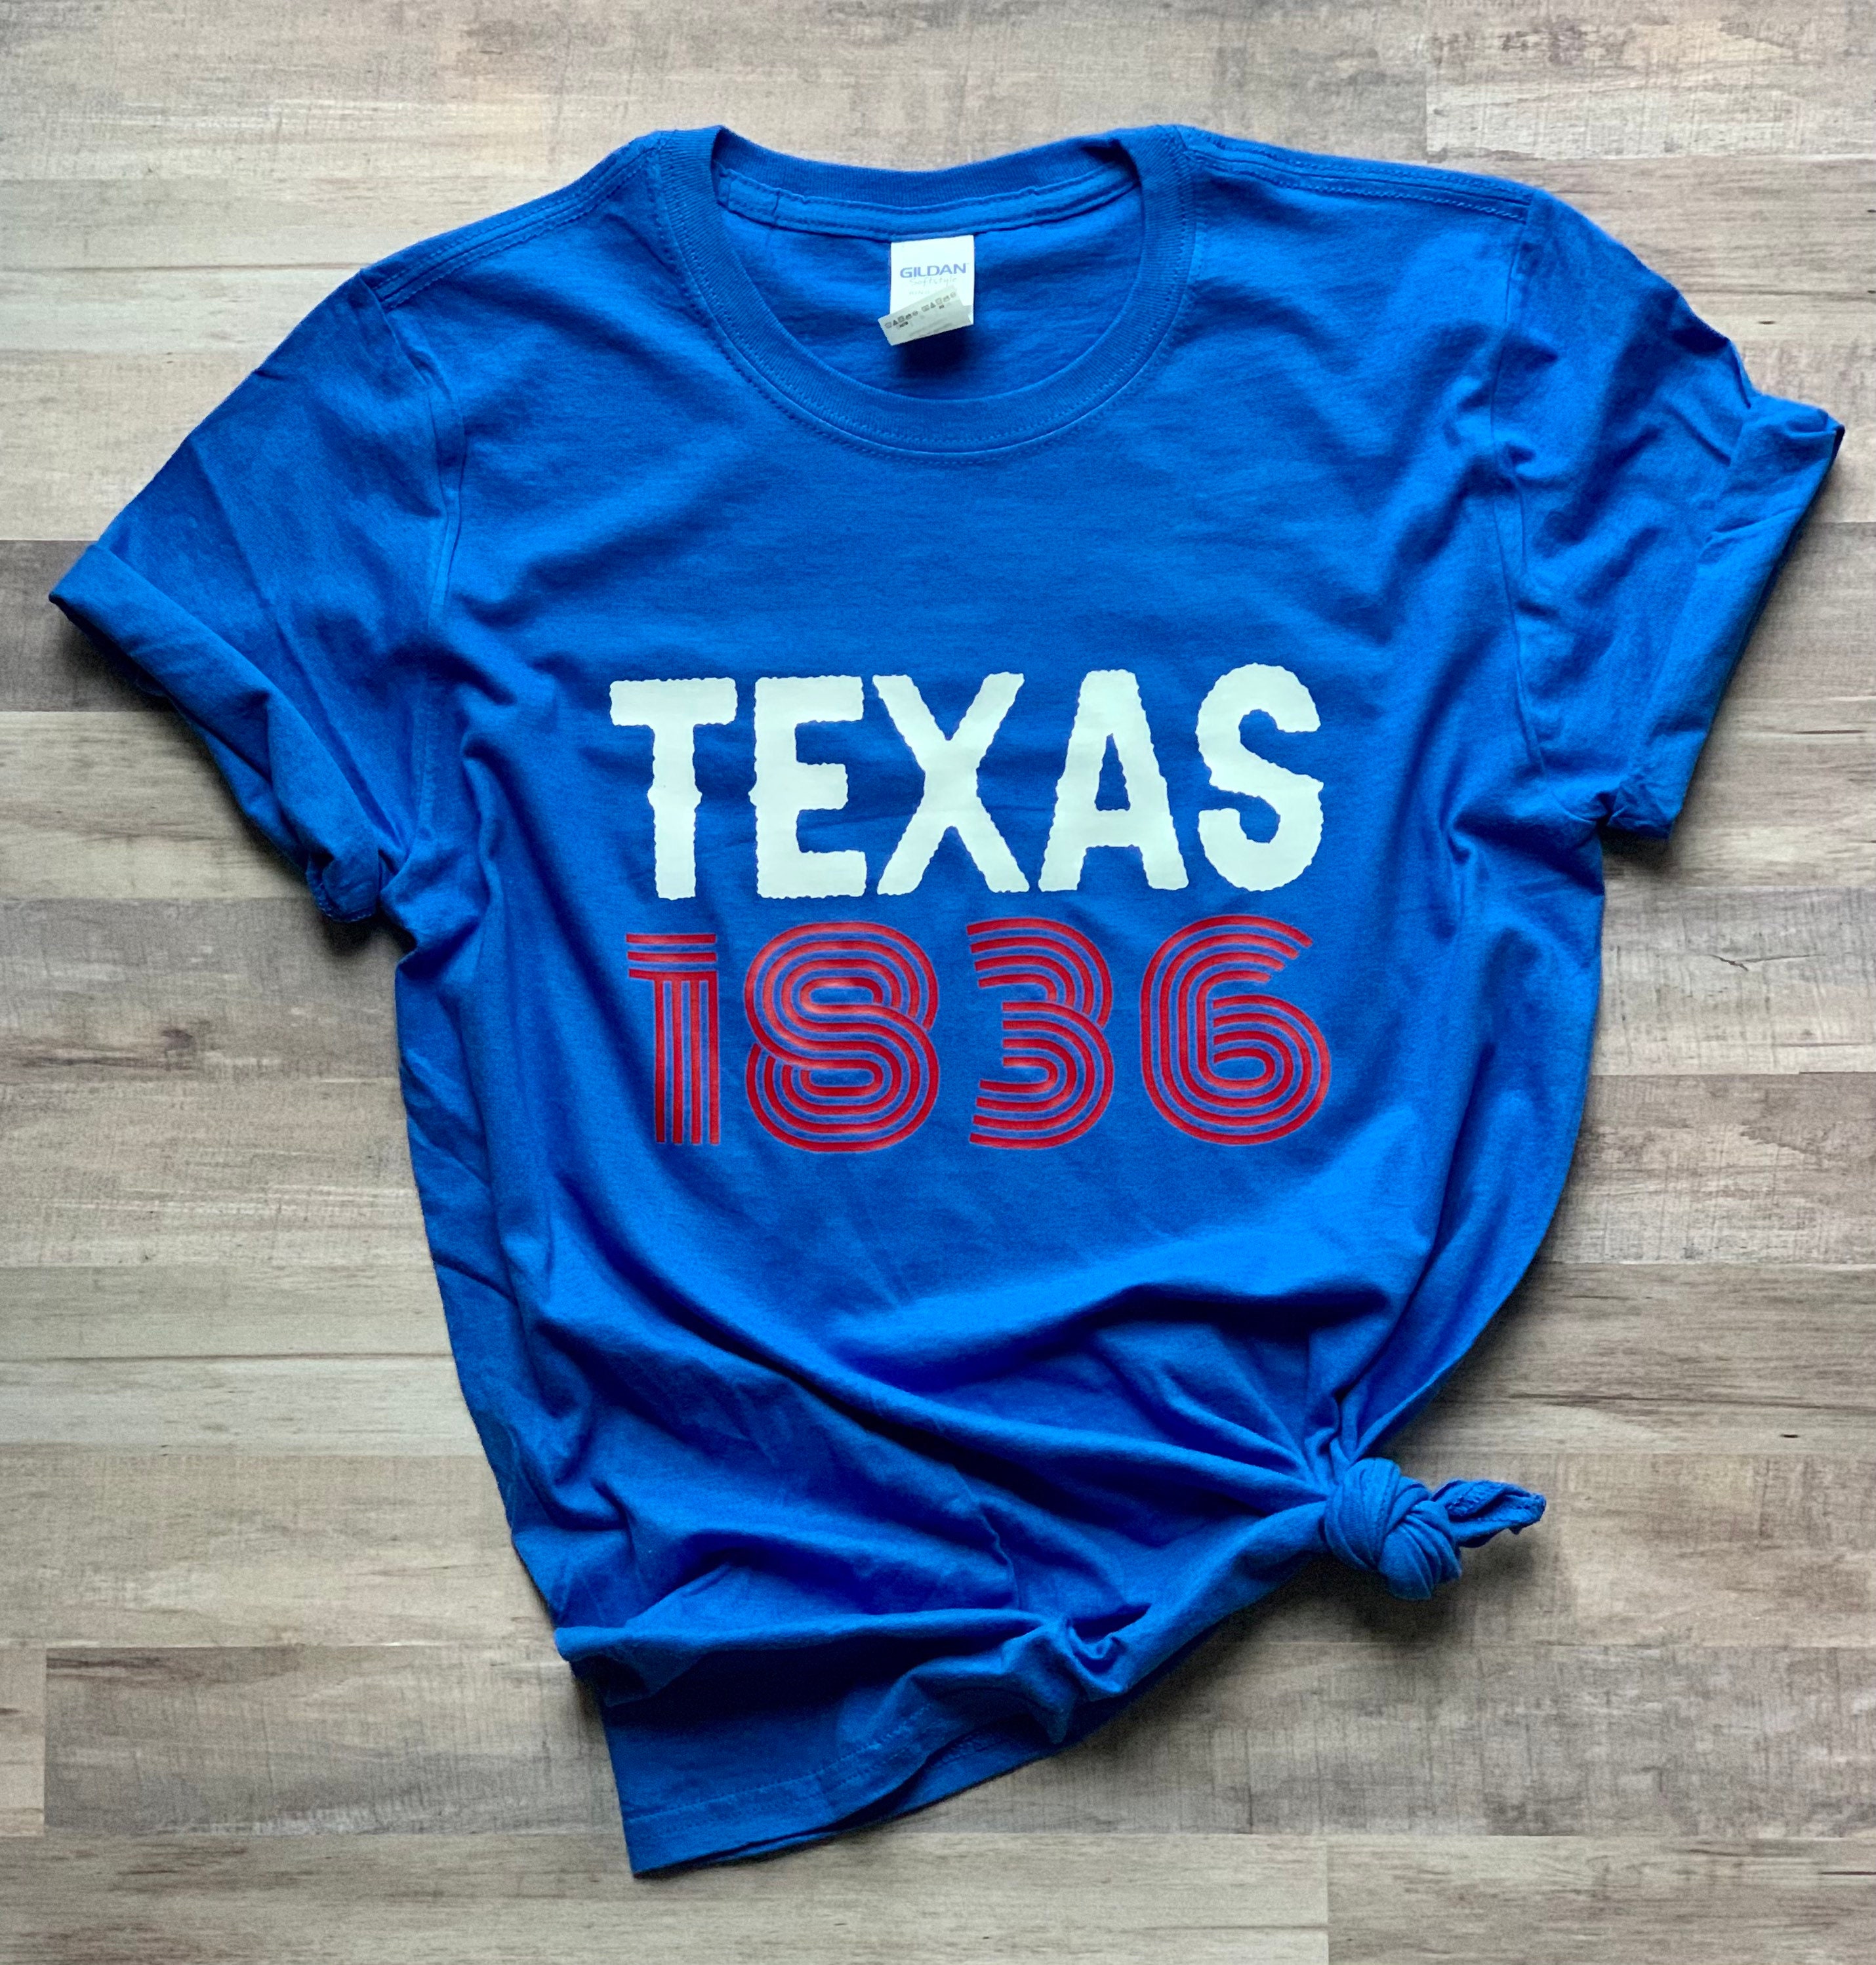 Texas 1836 Shirt Texas Shirt Republic of Texas Tee 1836 - Etsy